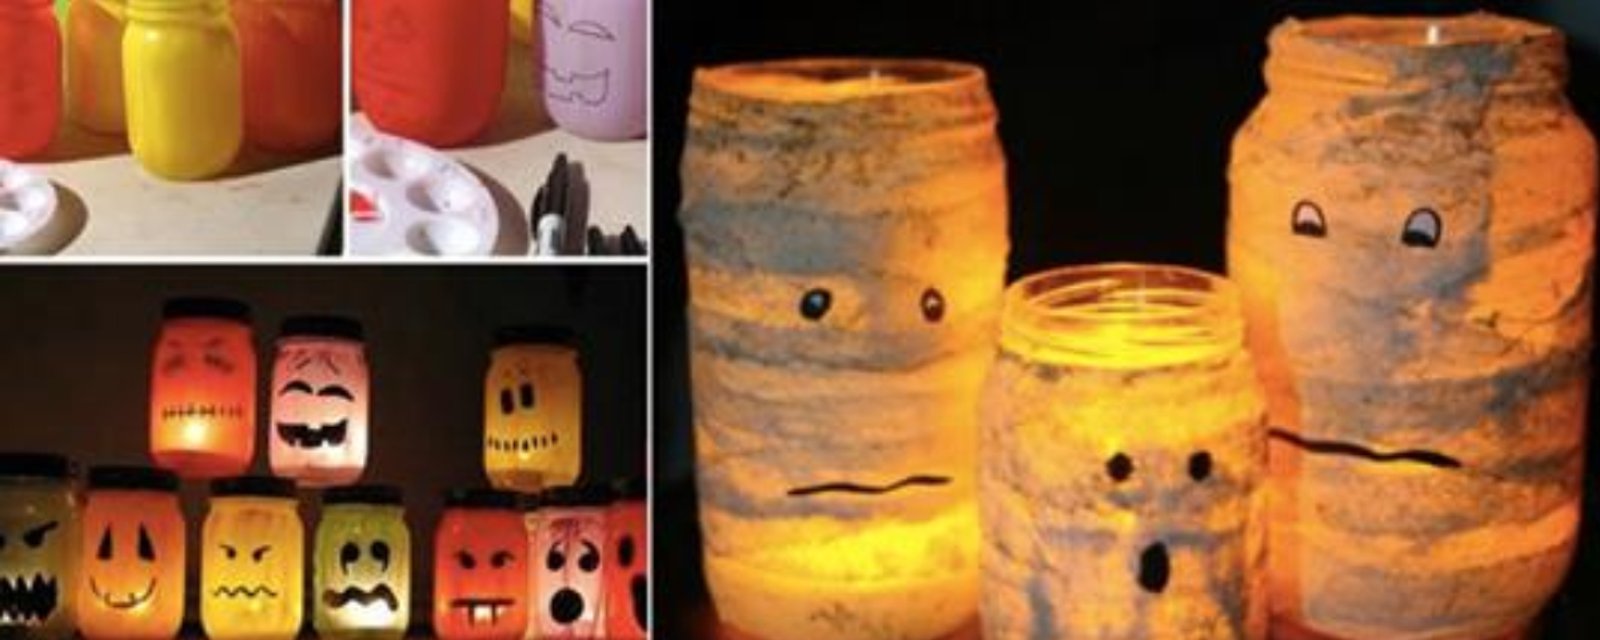 Découvrez comment bricoler des lanternes terrifiantes pour Halloween 